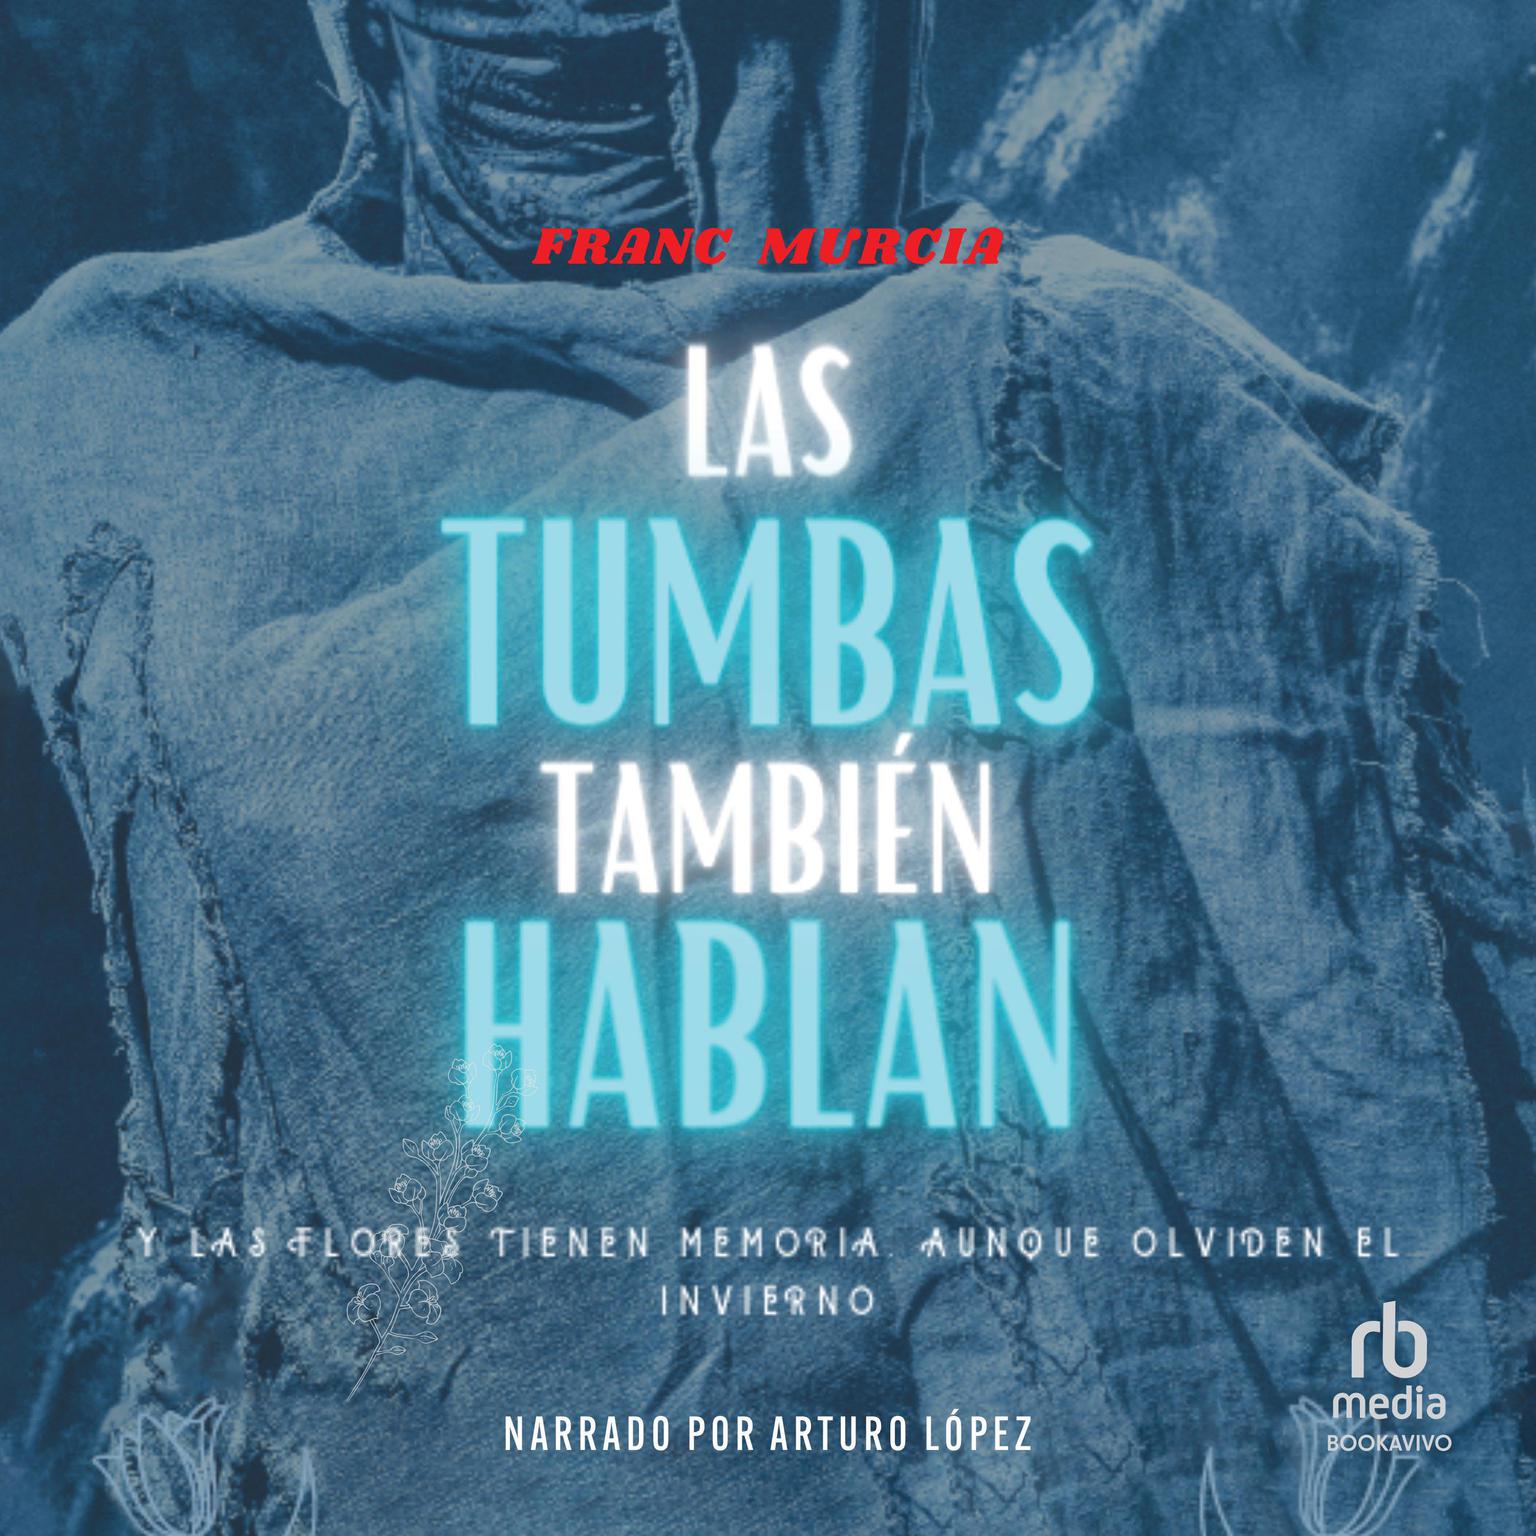 Las tumbas también hablan Audiobook, by Franc Murcia